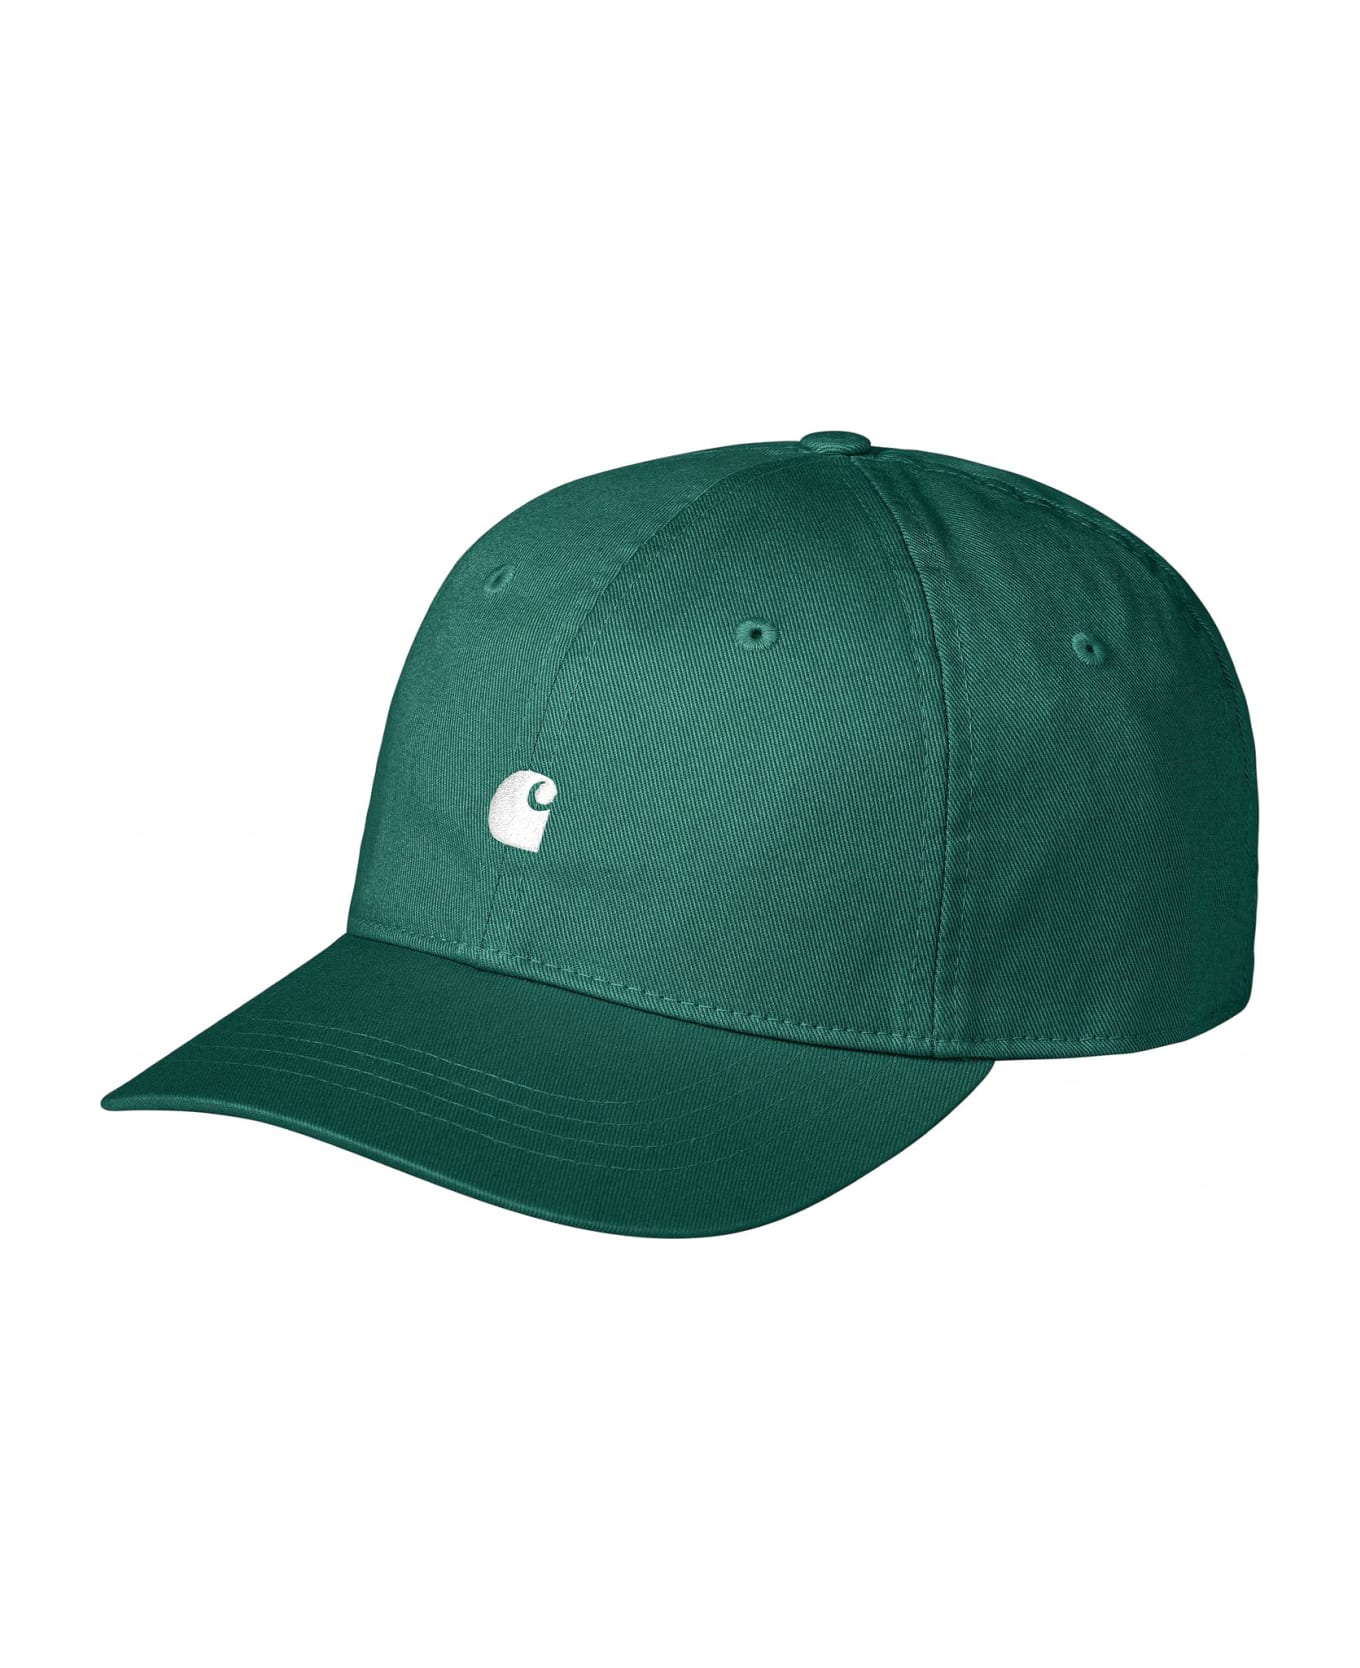 Carhartt Hats Green - Green